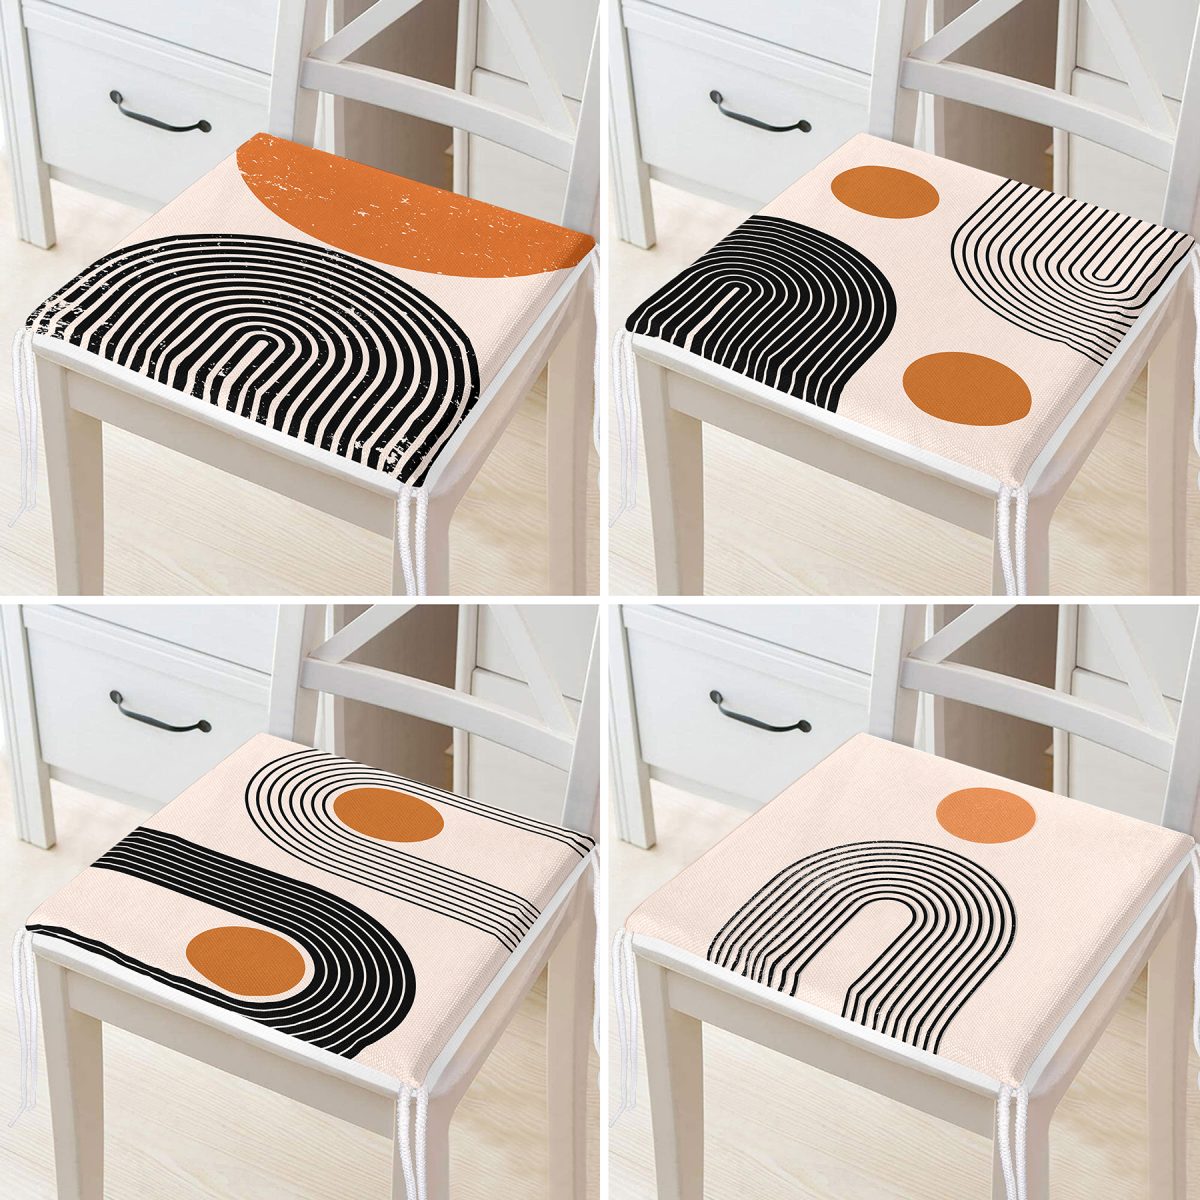 4'lü Minimalist Tasarımlı Modern Fermuarlı Sandalye Minderi Seti Realhomes